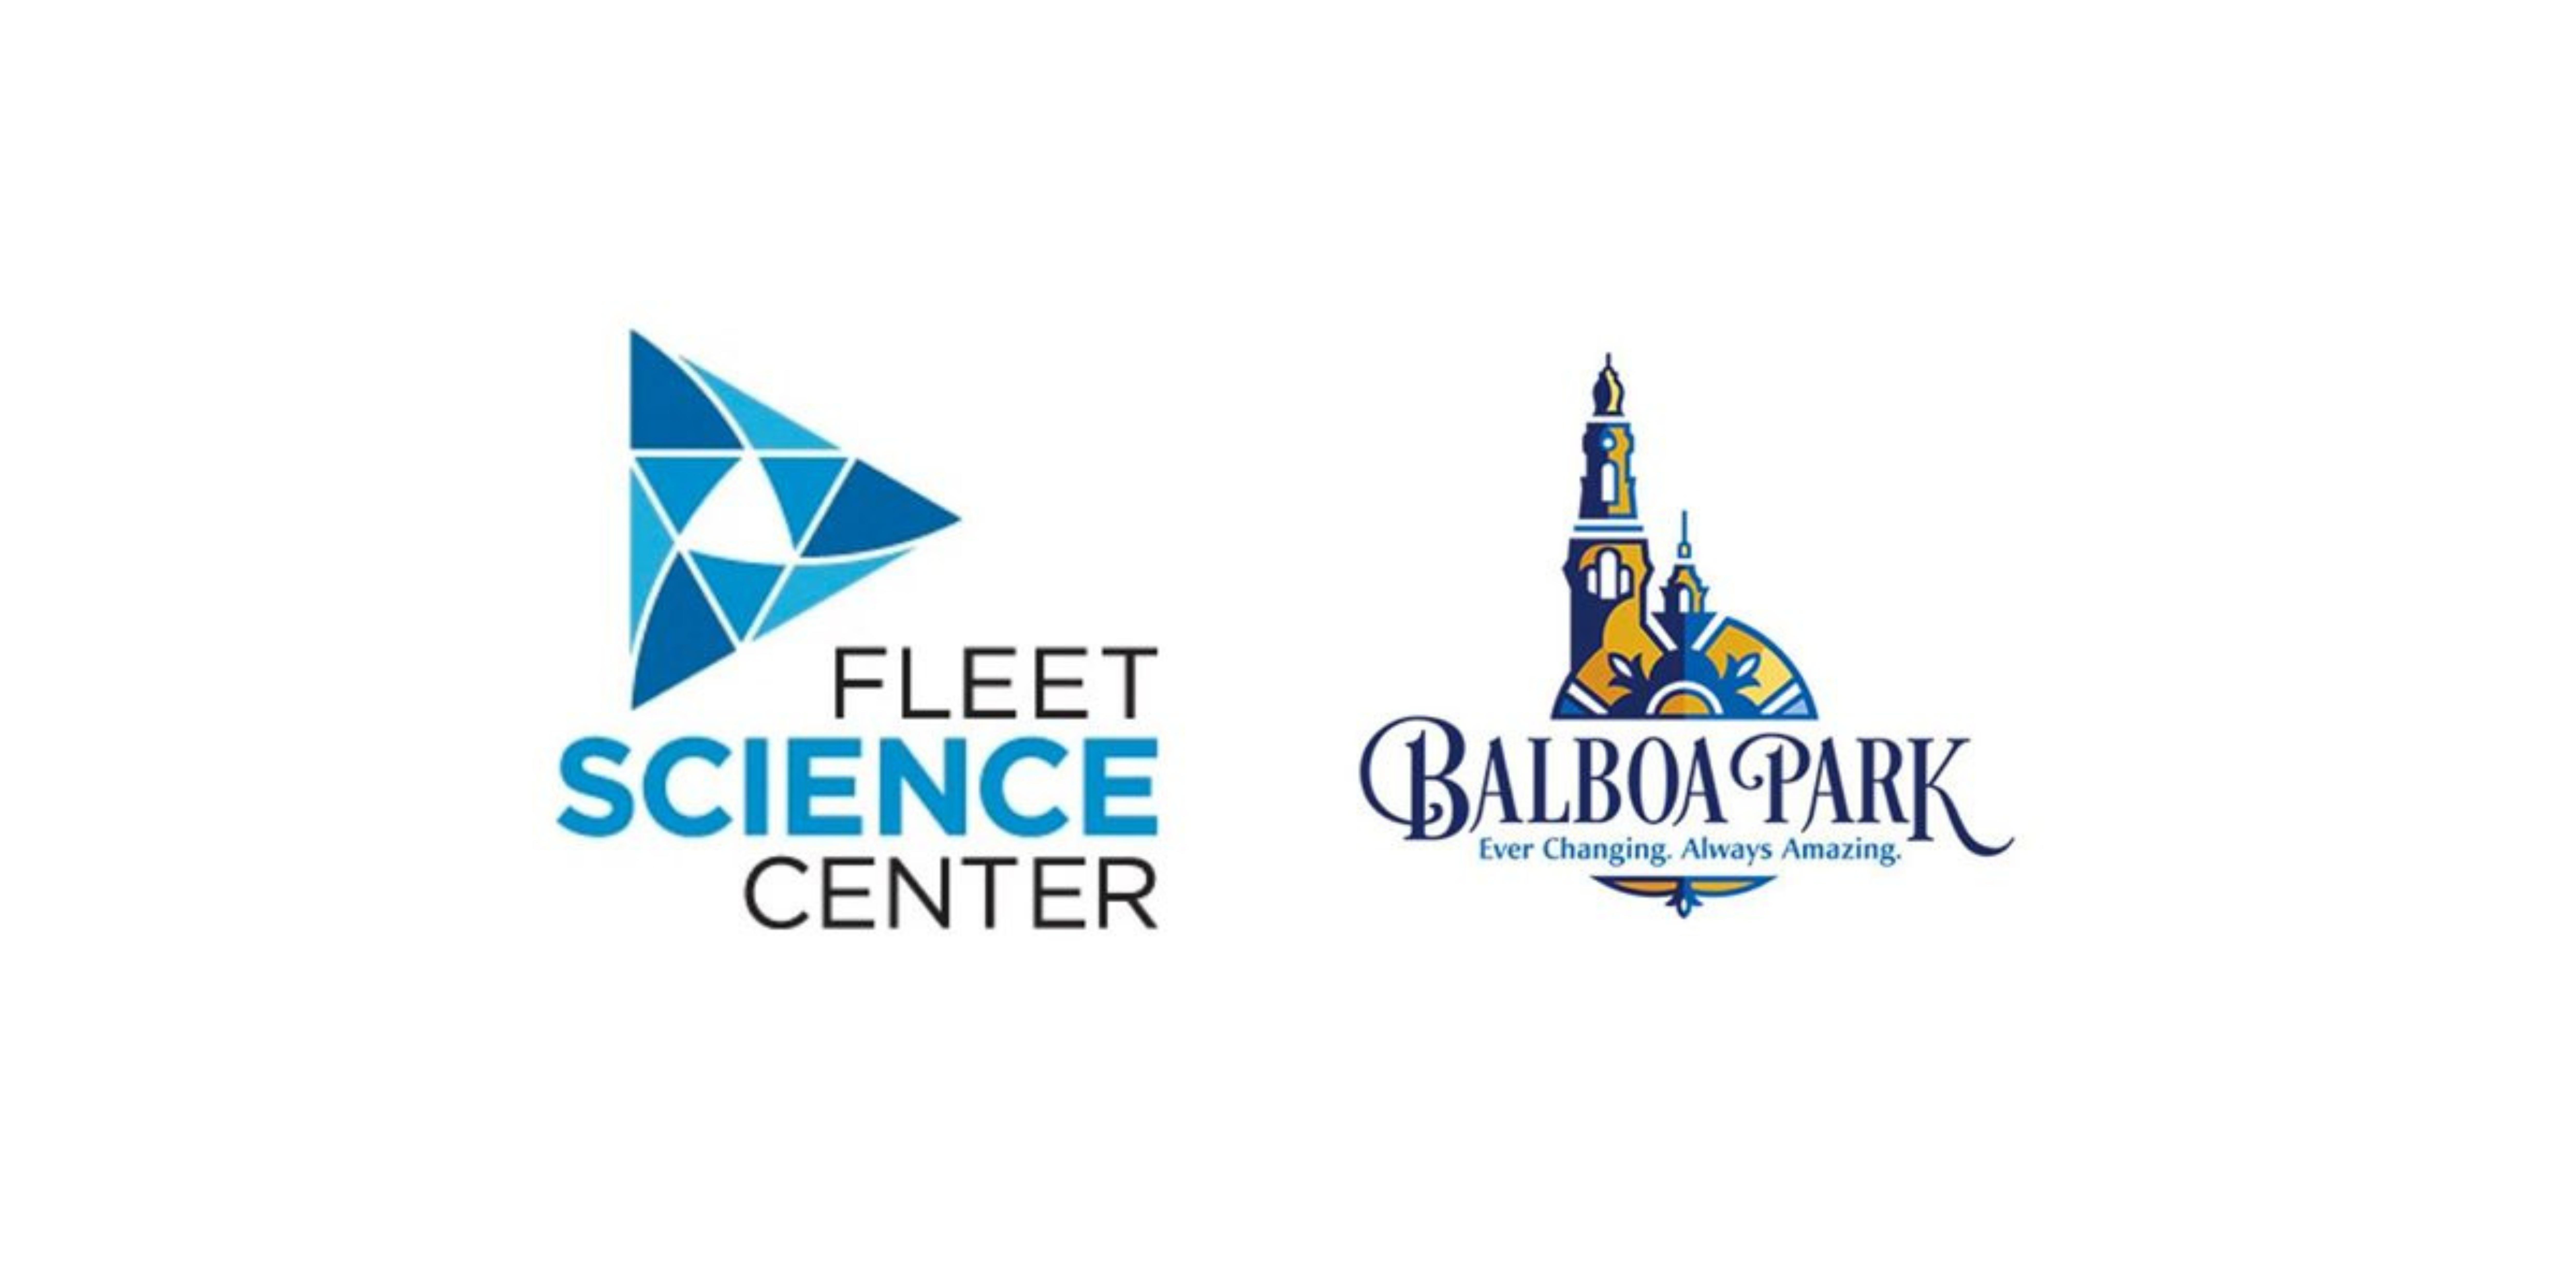 Fleet science center and Balboa Park logos